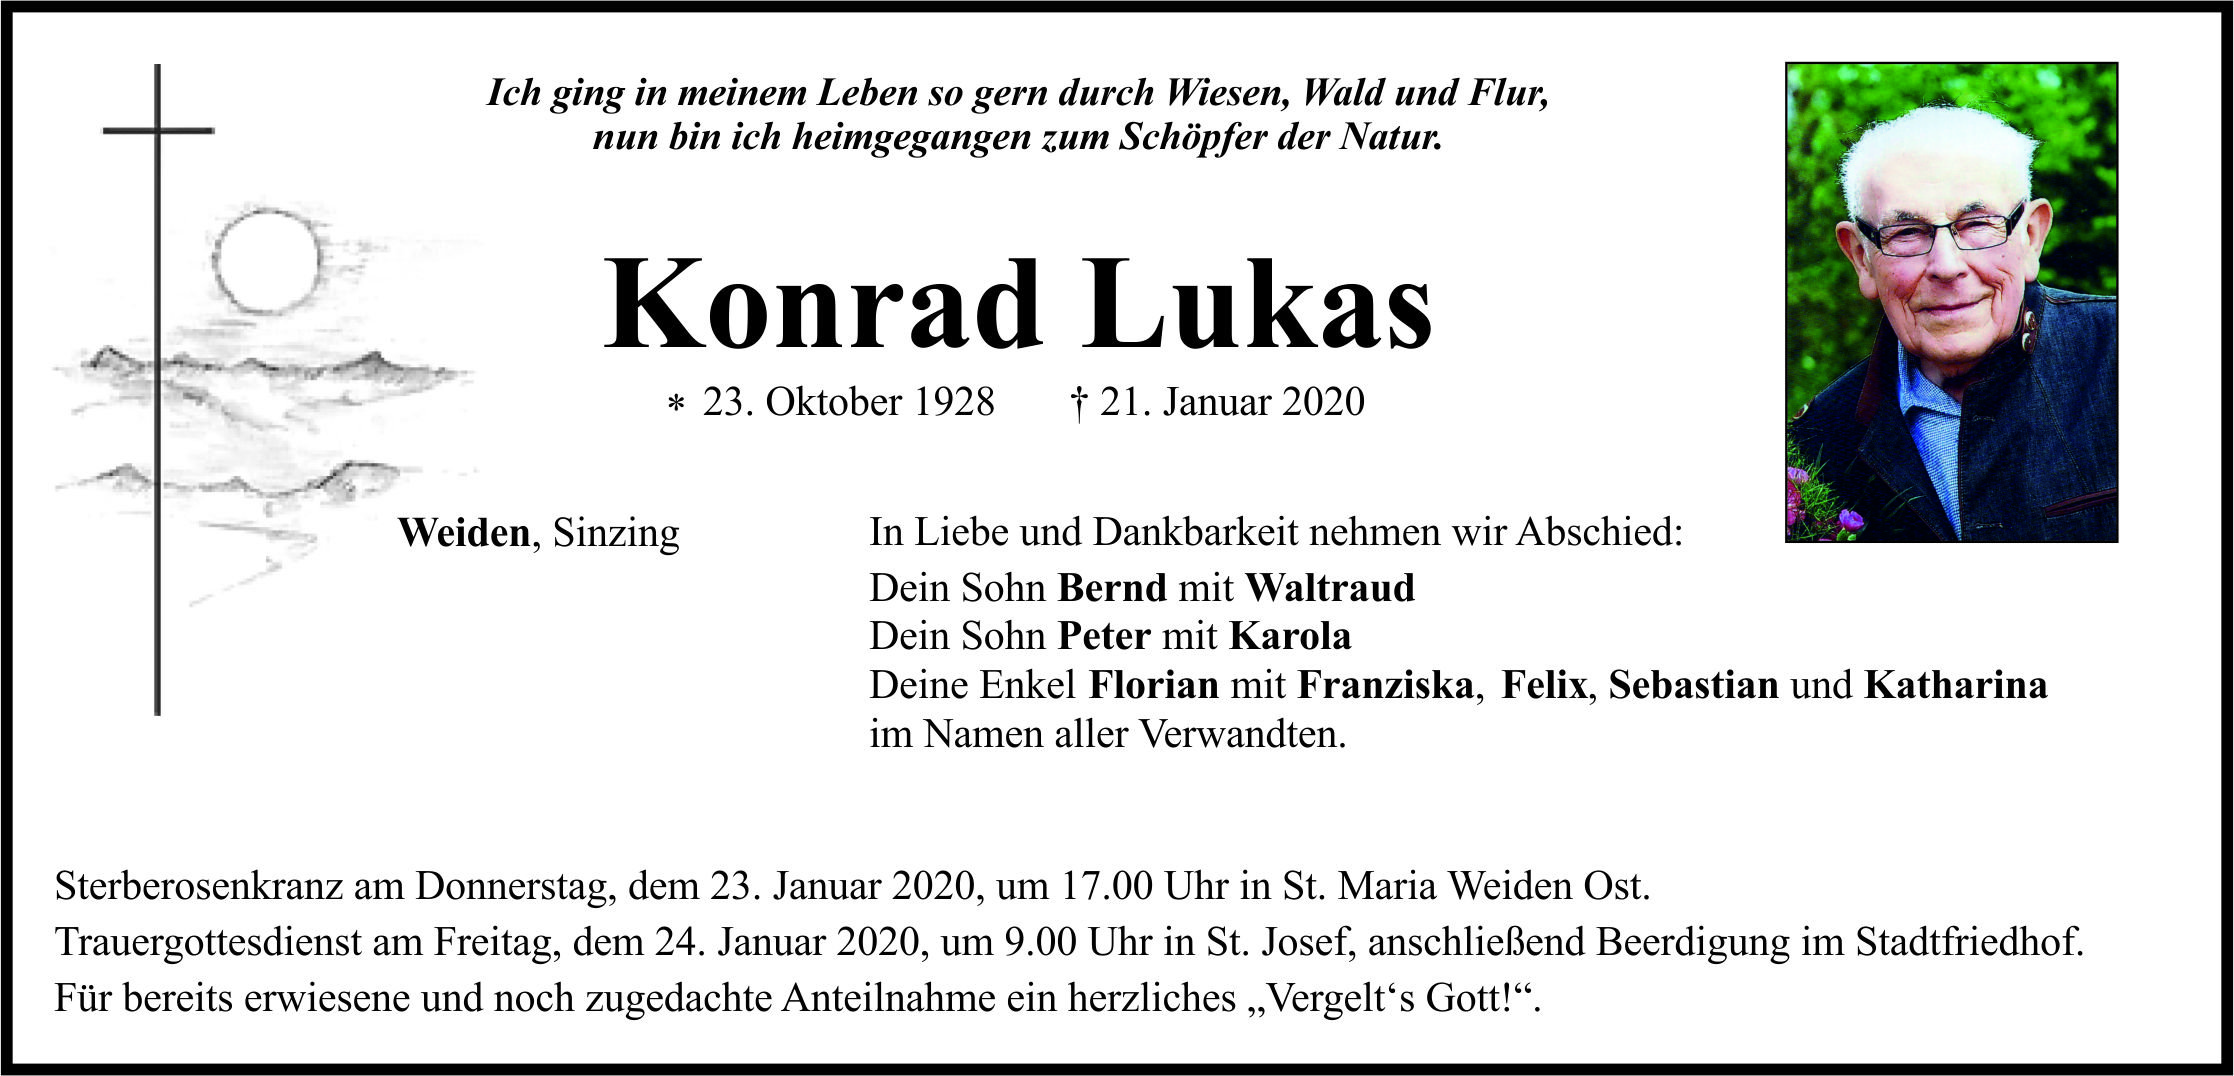 Traueranzeige Konrad Lukas, Weiden